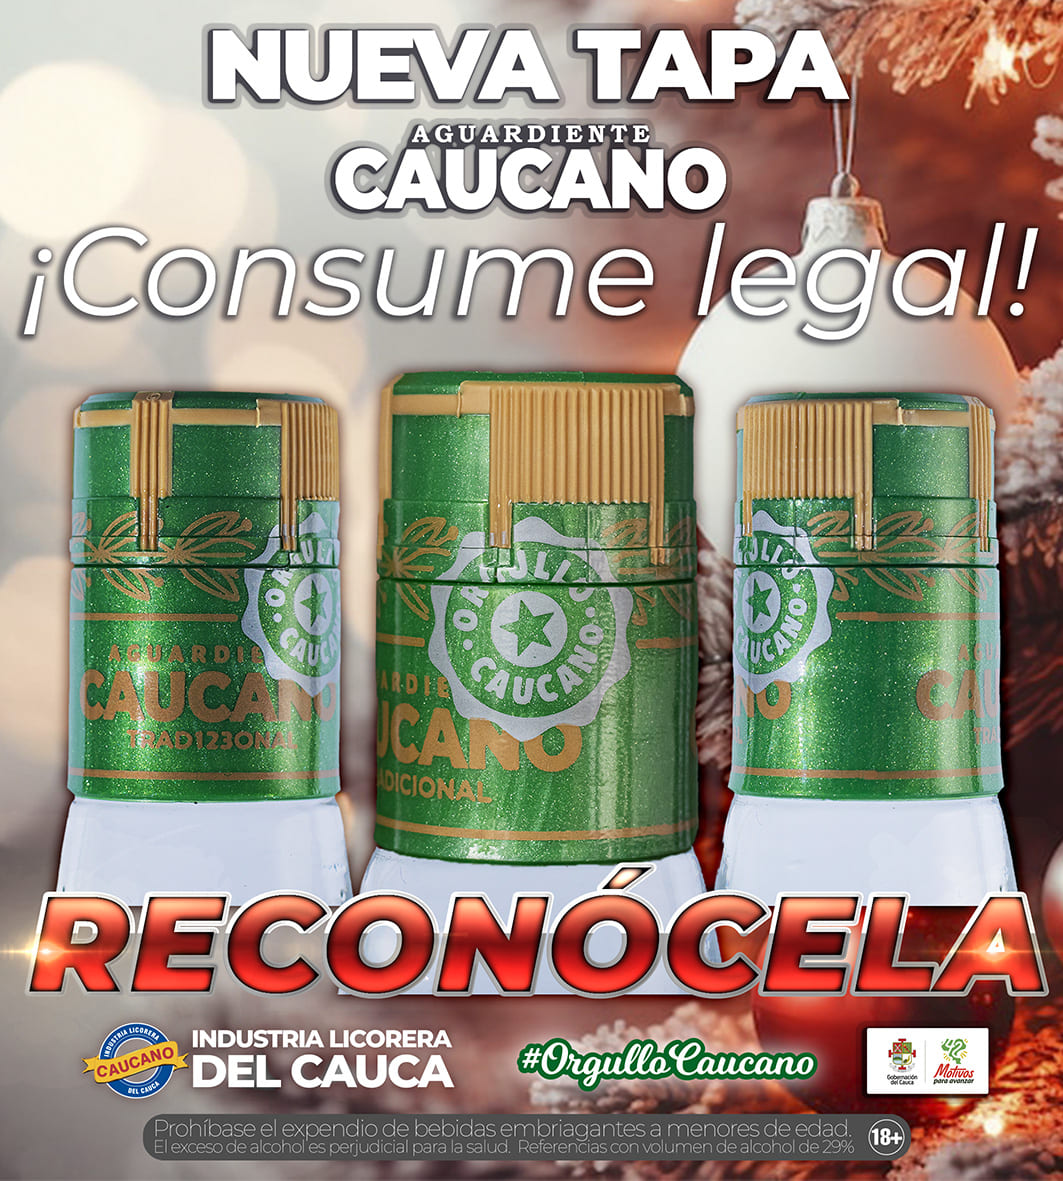                                              Nuestro #AguardienteCaucano tiene nueva tapa ¡Conócela!
                                            